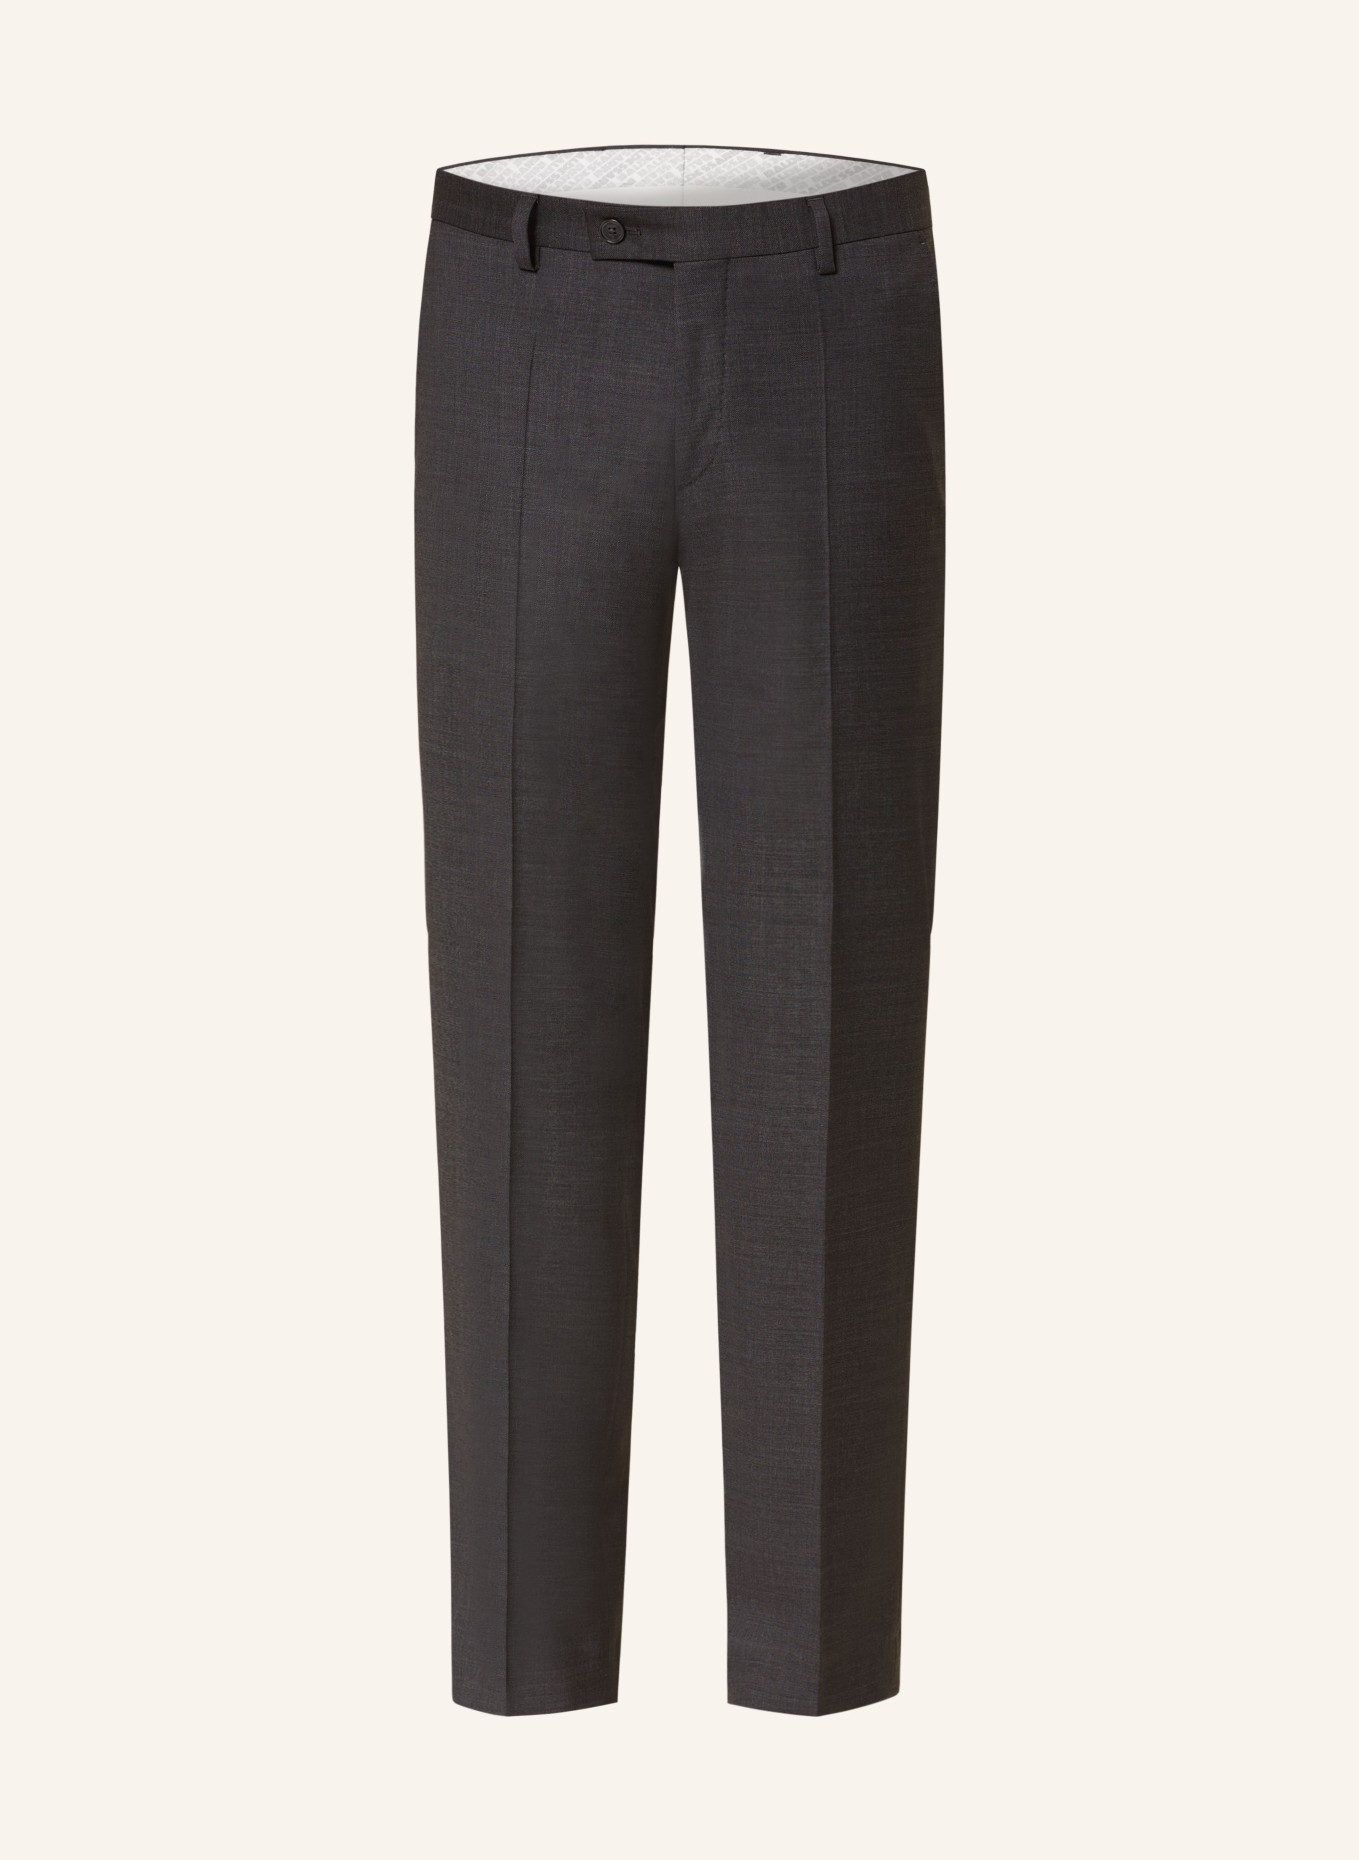 BALDESSARINI Suit trousers MASSA slim fit, Color: 9528 Black Beauty Melange (Image 1)